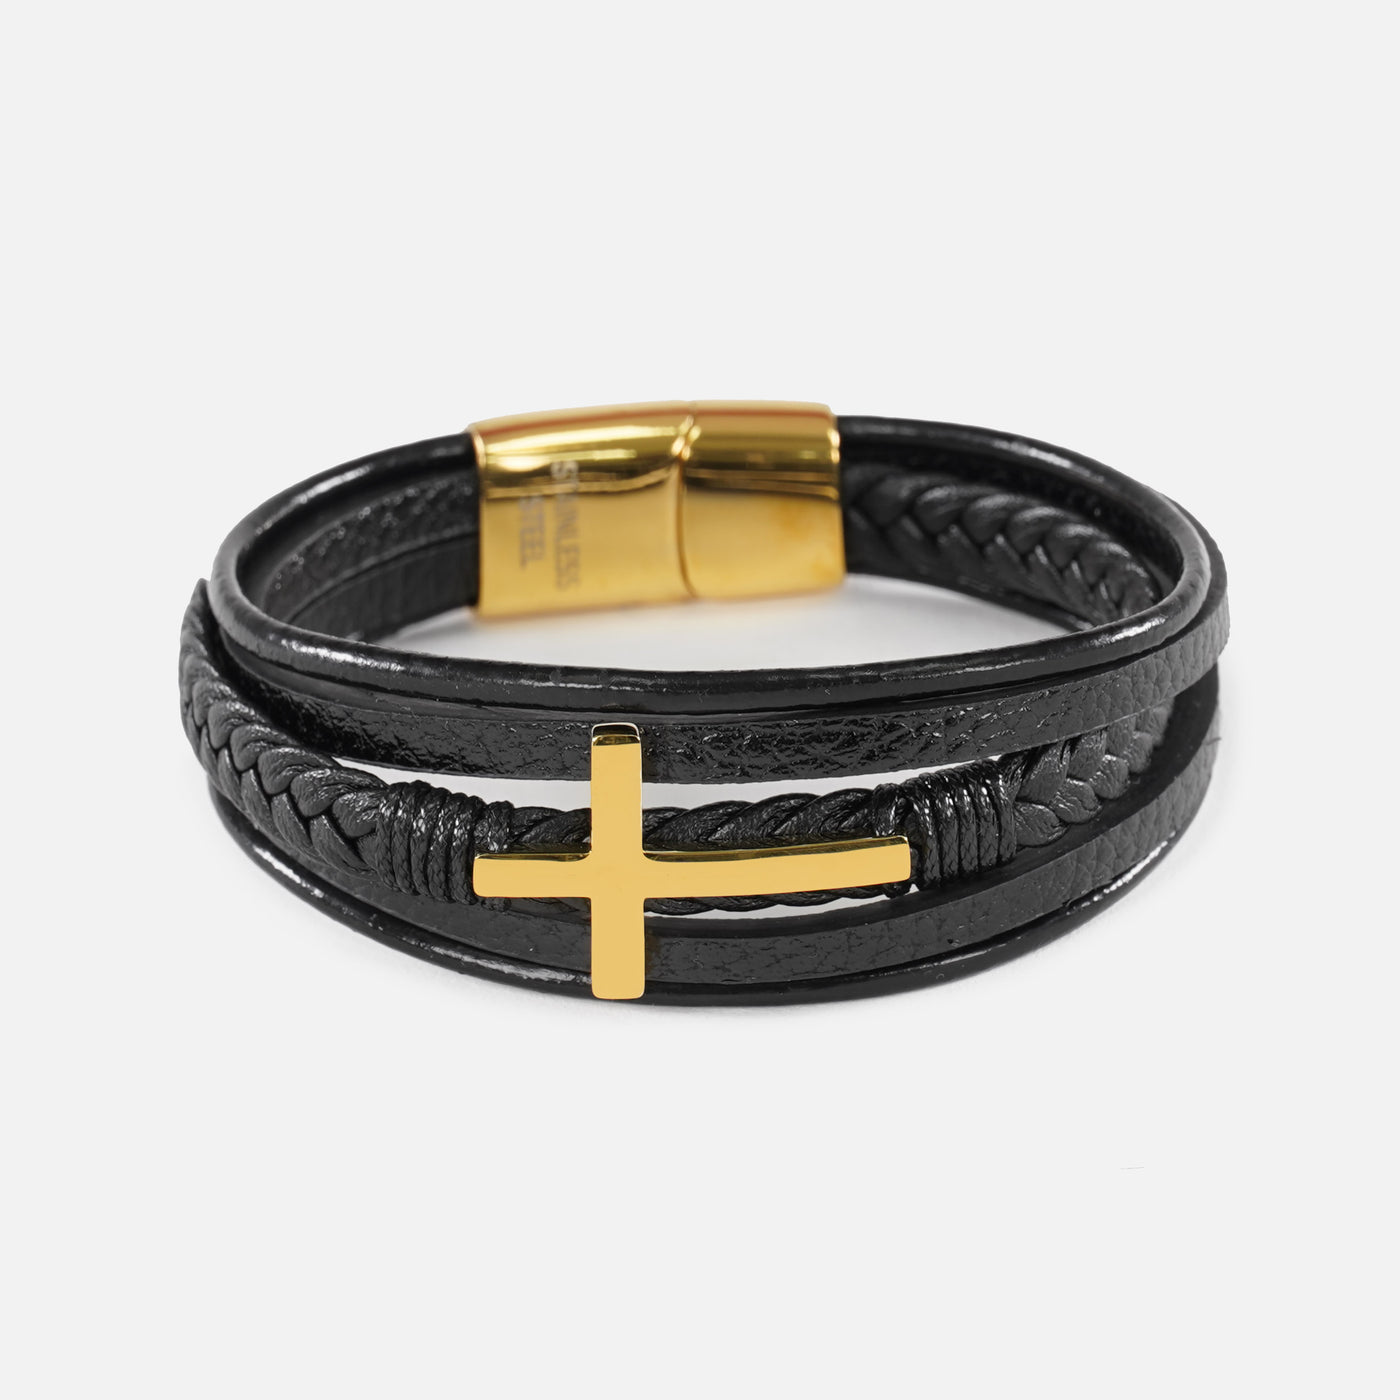 3 in 1 Gold Cross Leather Bracelet